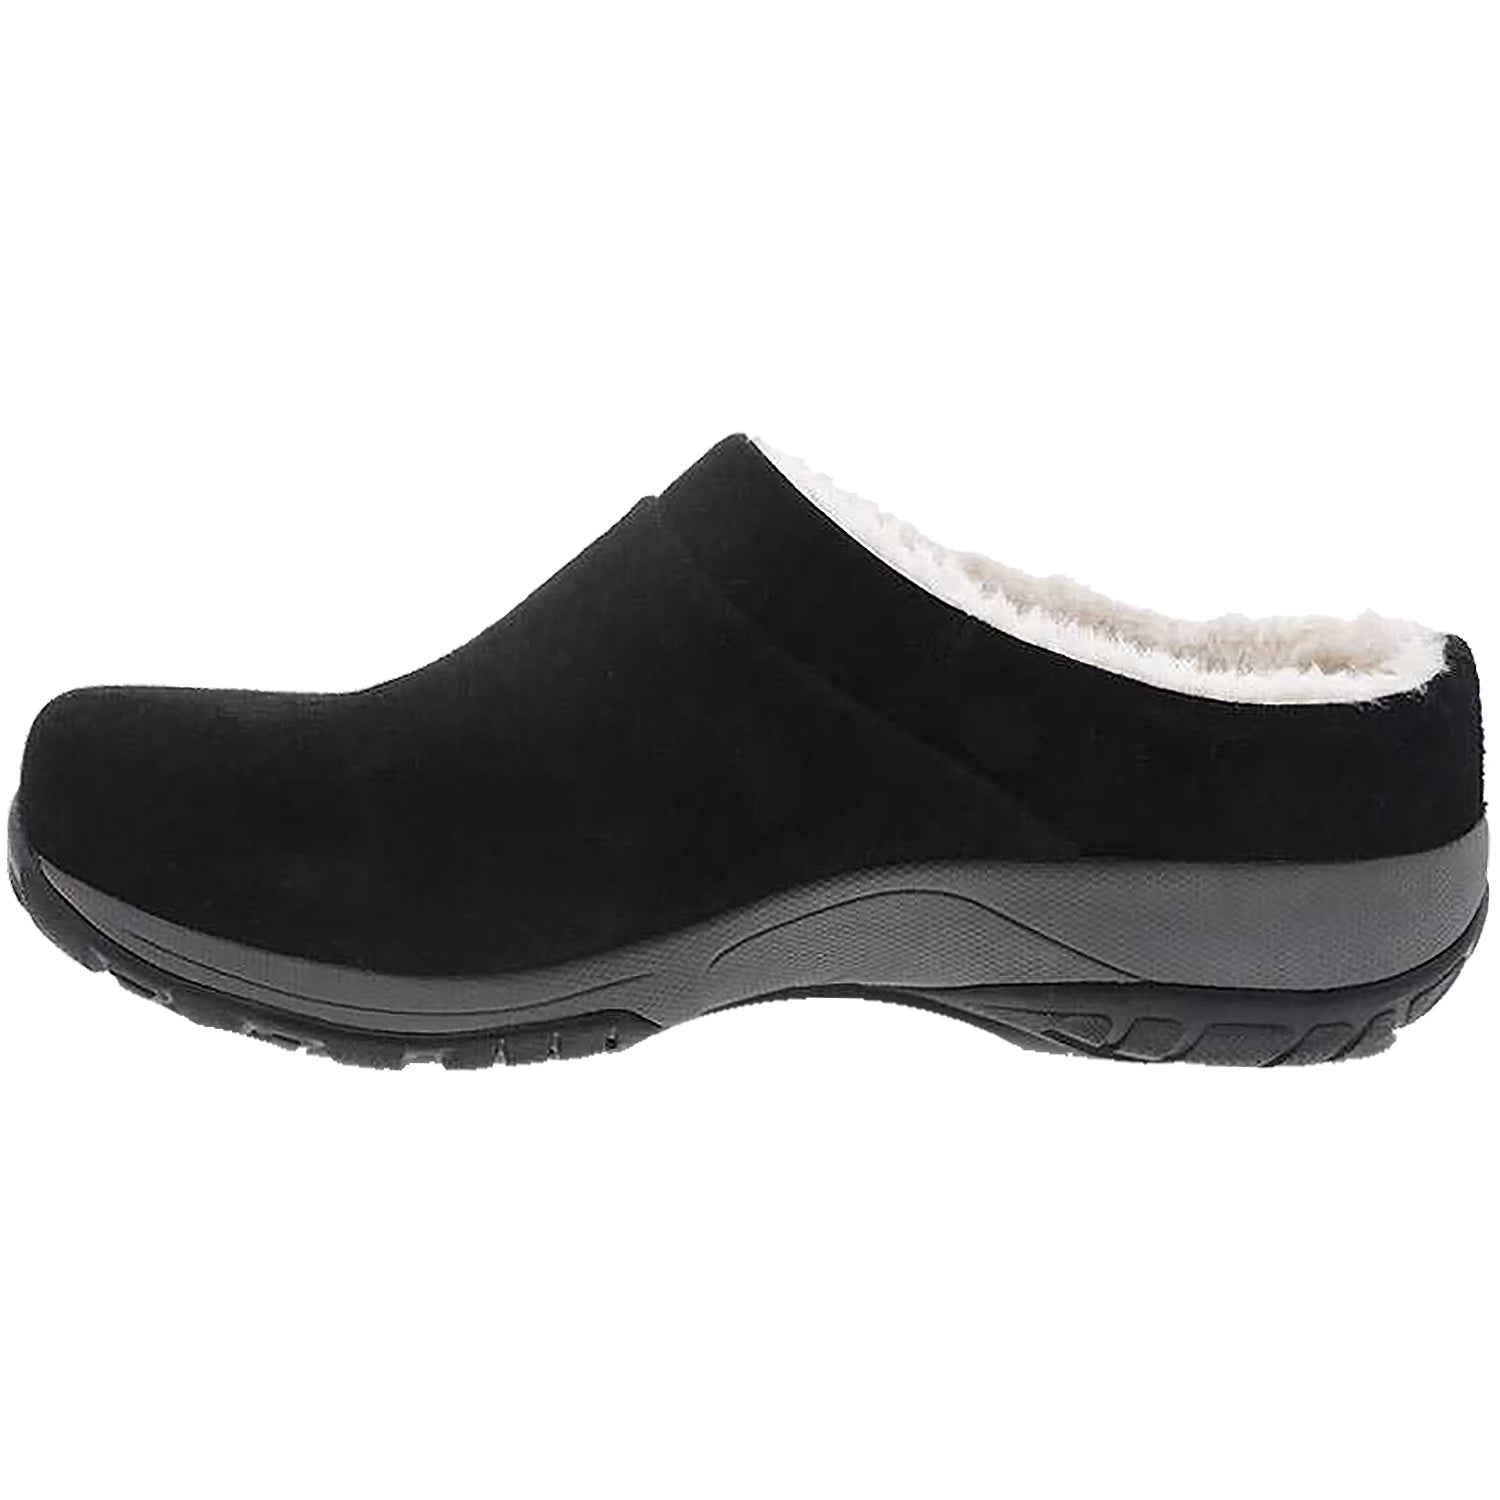 Dansko Parson | Women's Slip-On Shoes | Footwear etc.